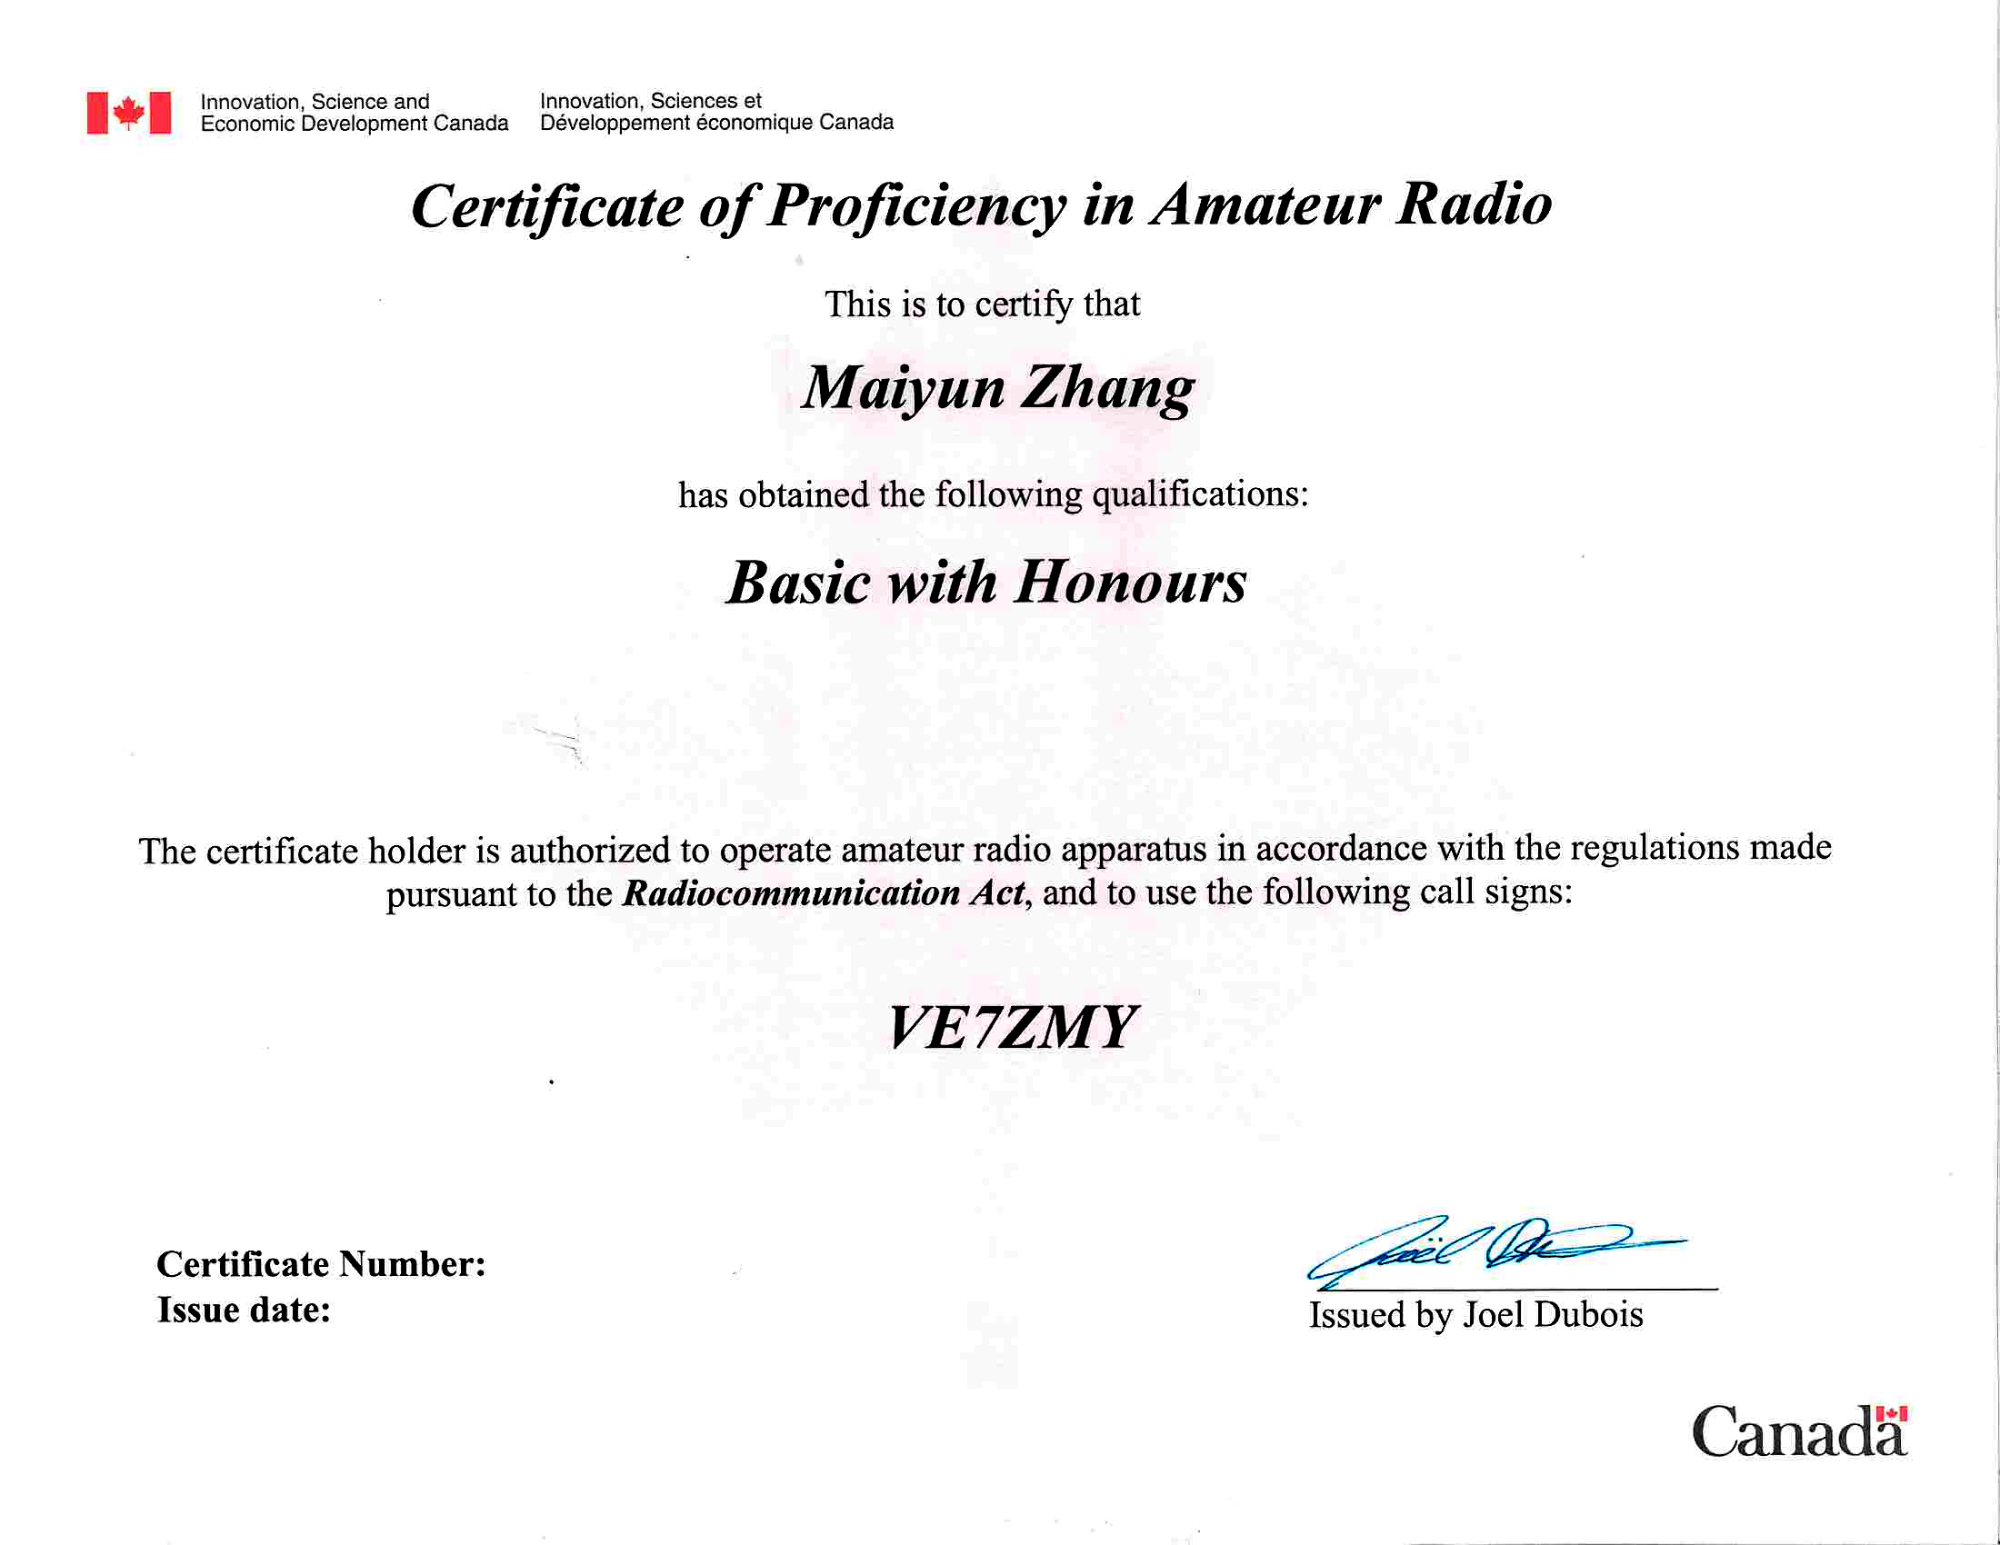 Canadian amateur radio certificate